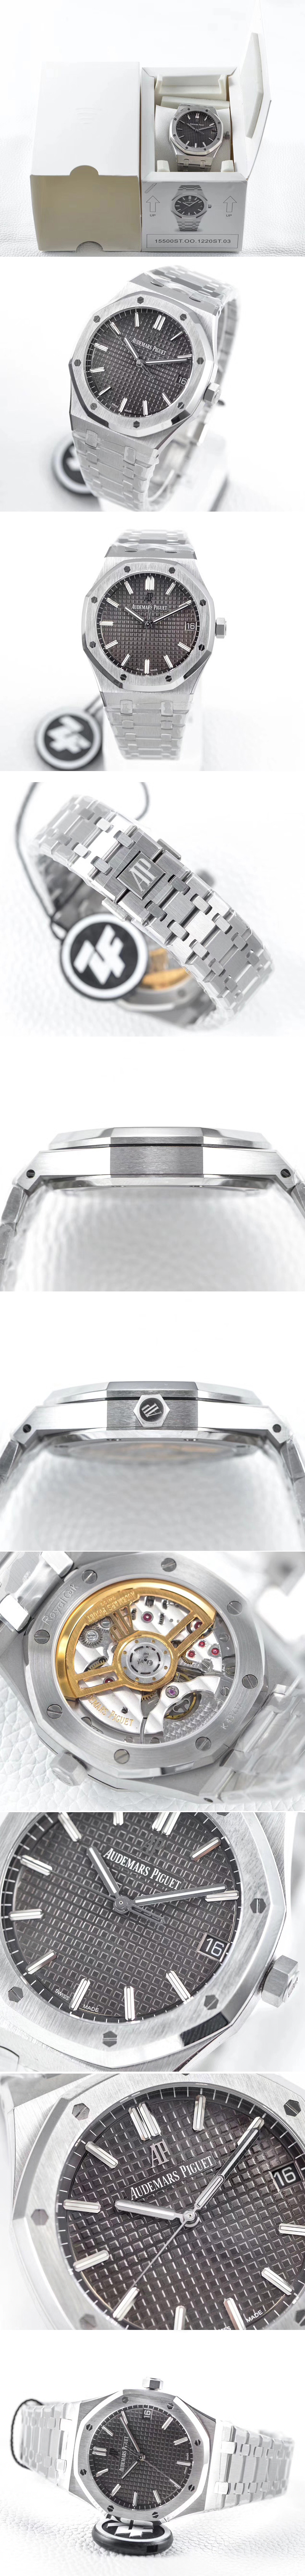 Replica Audemars Piguet Royal Oak 41mm 15500 SS ZF 1:1 Best Edition Gray Textured Dial on SS Bracelet A4302 (Free Box)